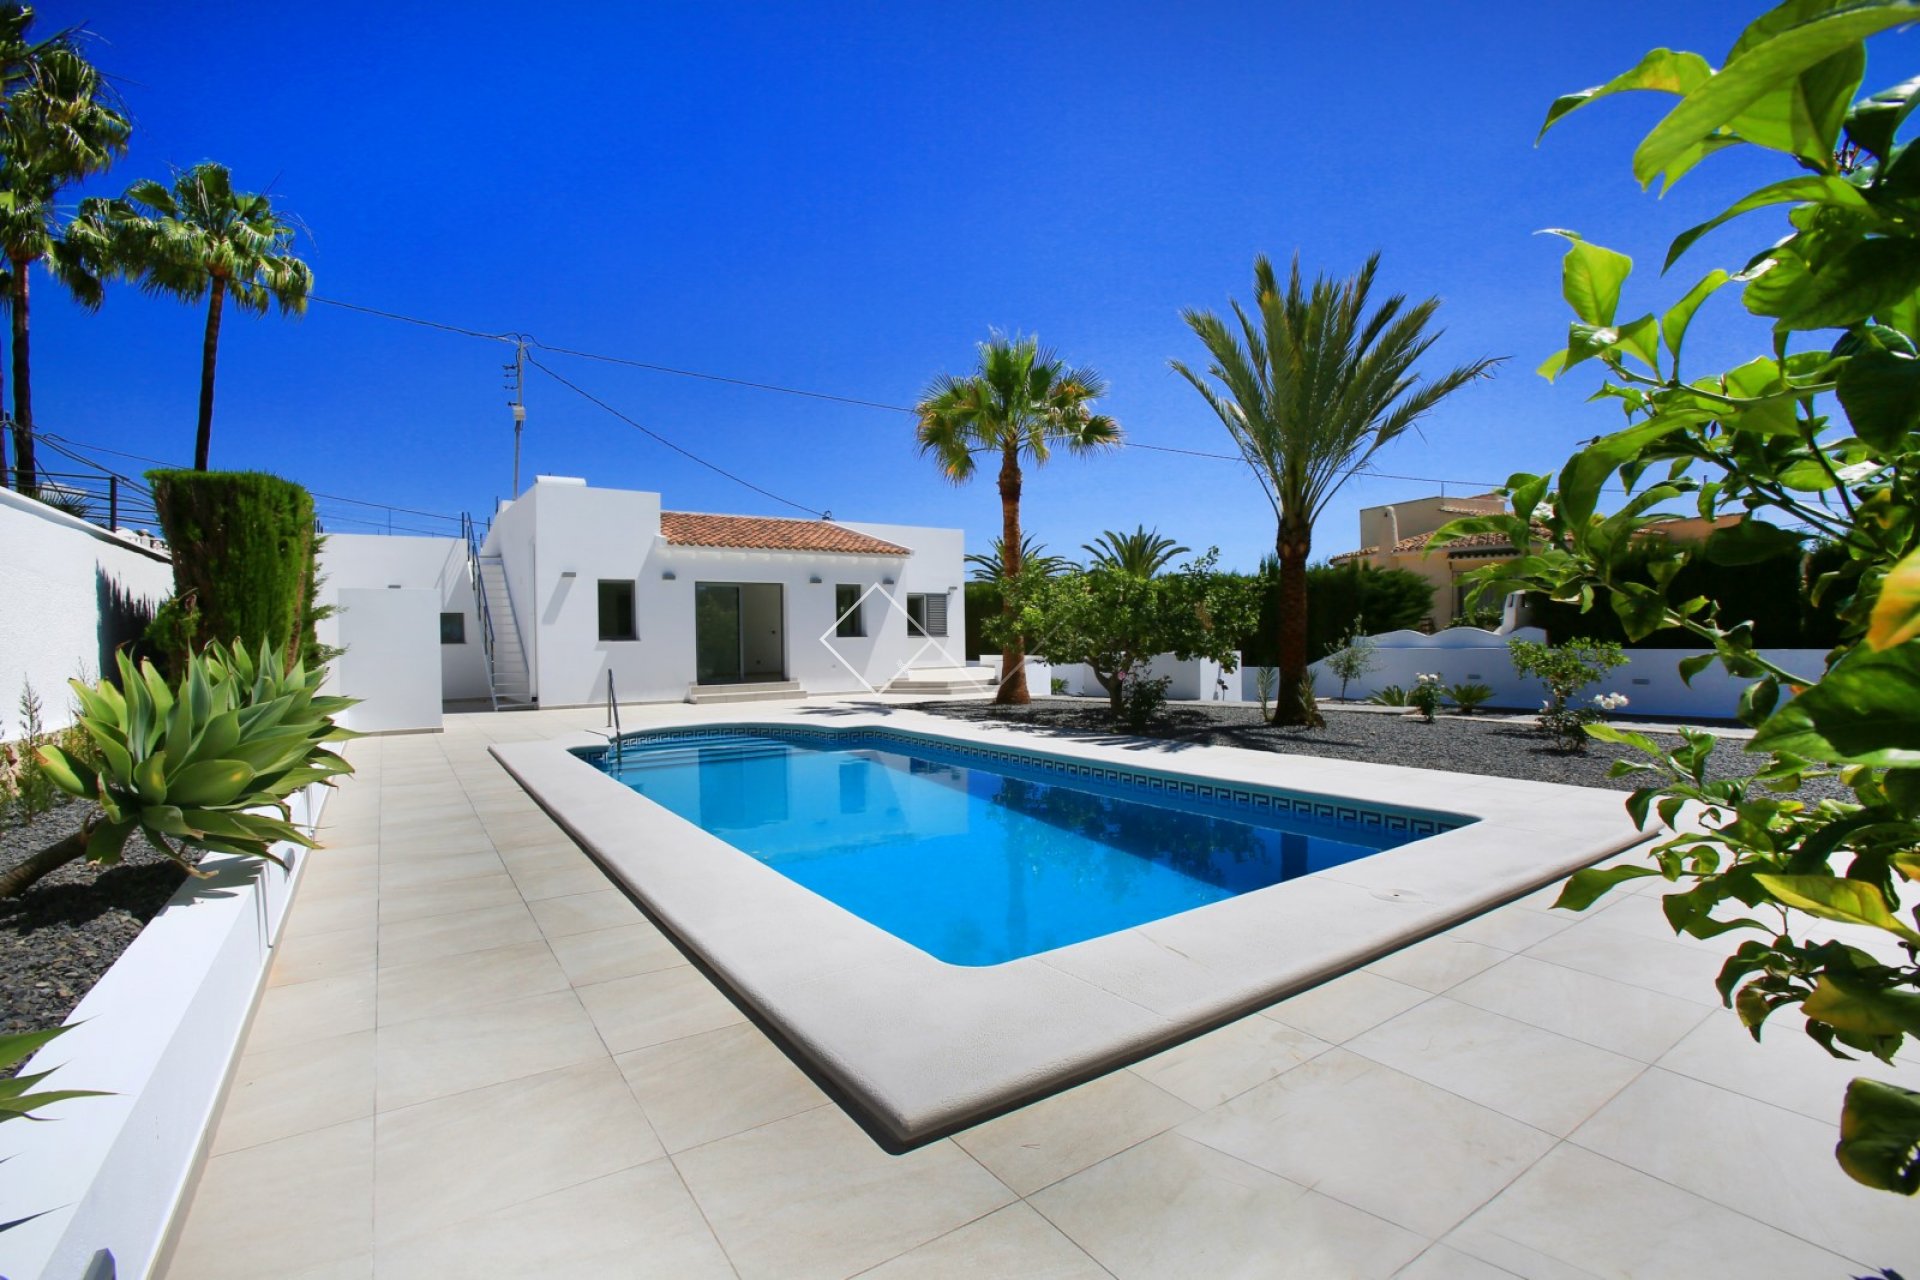 Villa reformada en venta en Benissa, a 200m de la playa